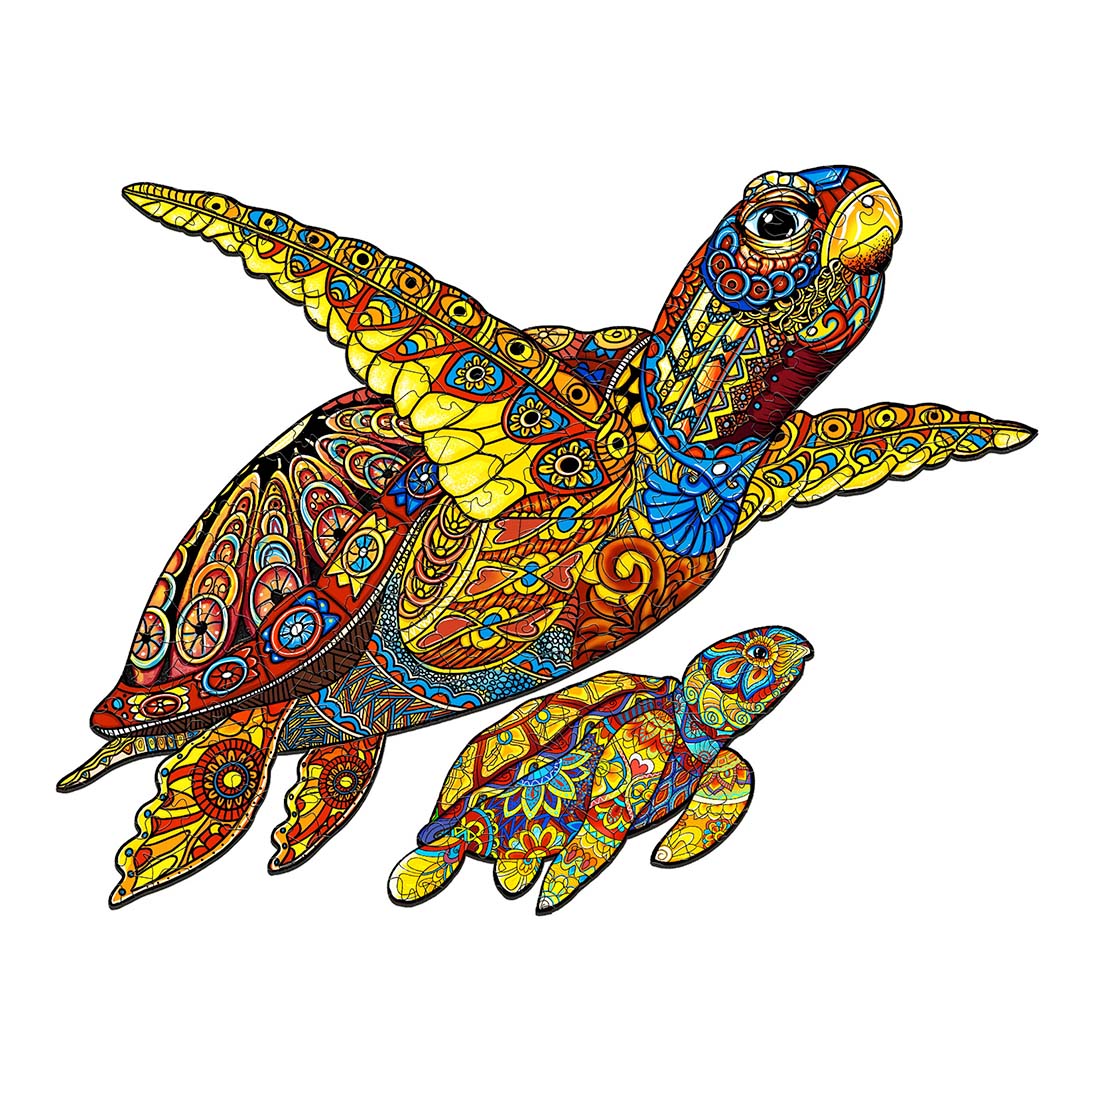 Meeresschildkröten Familie - Holzpuzzle 